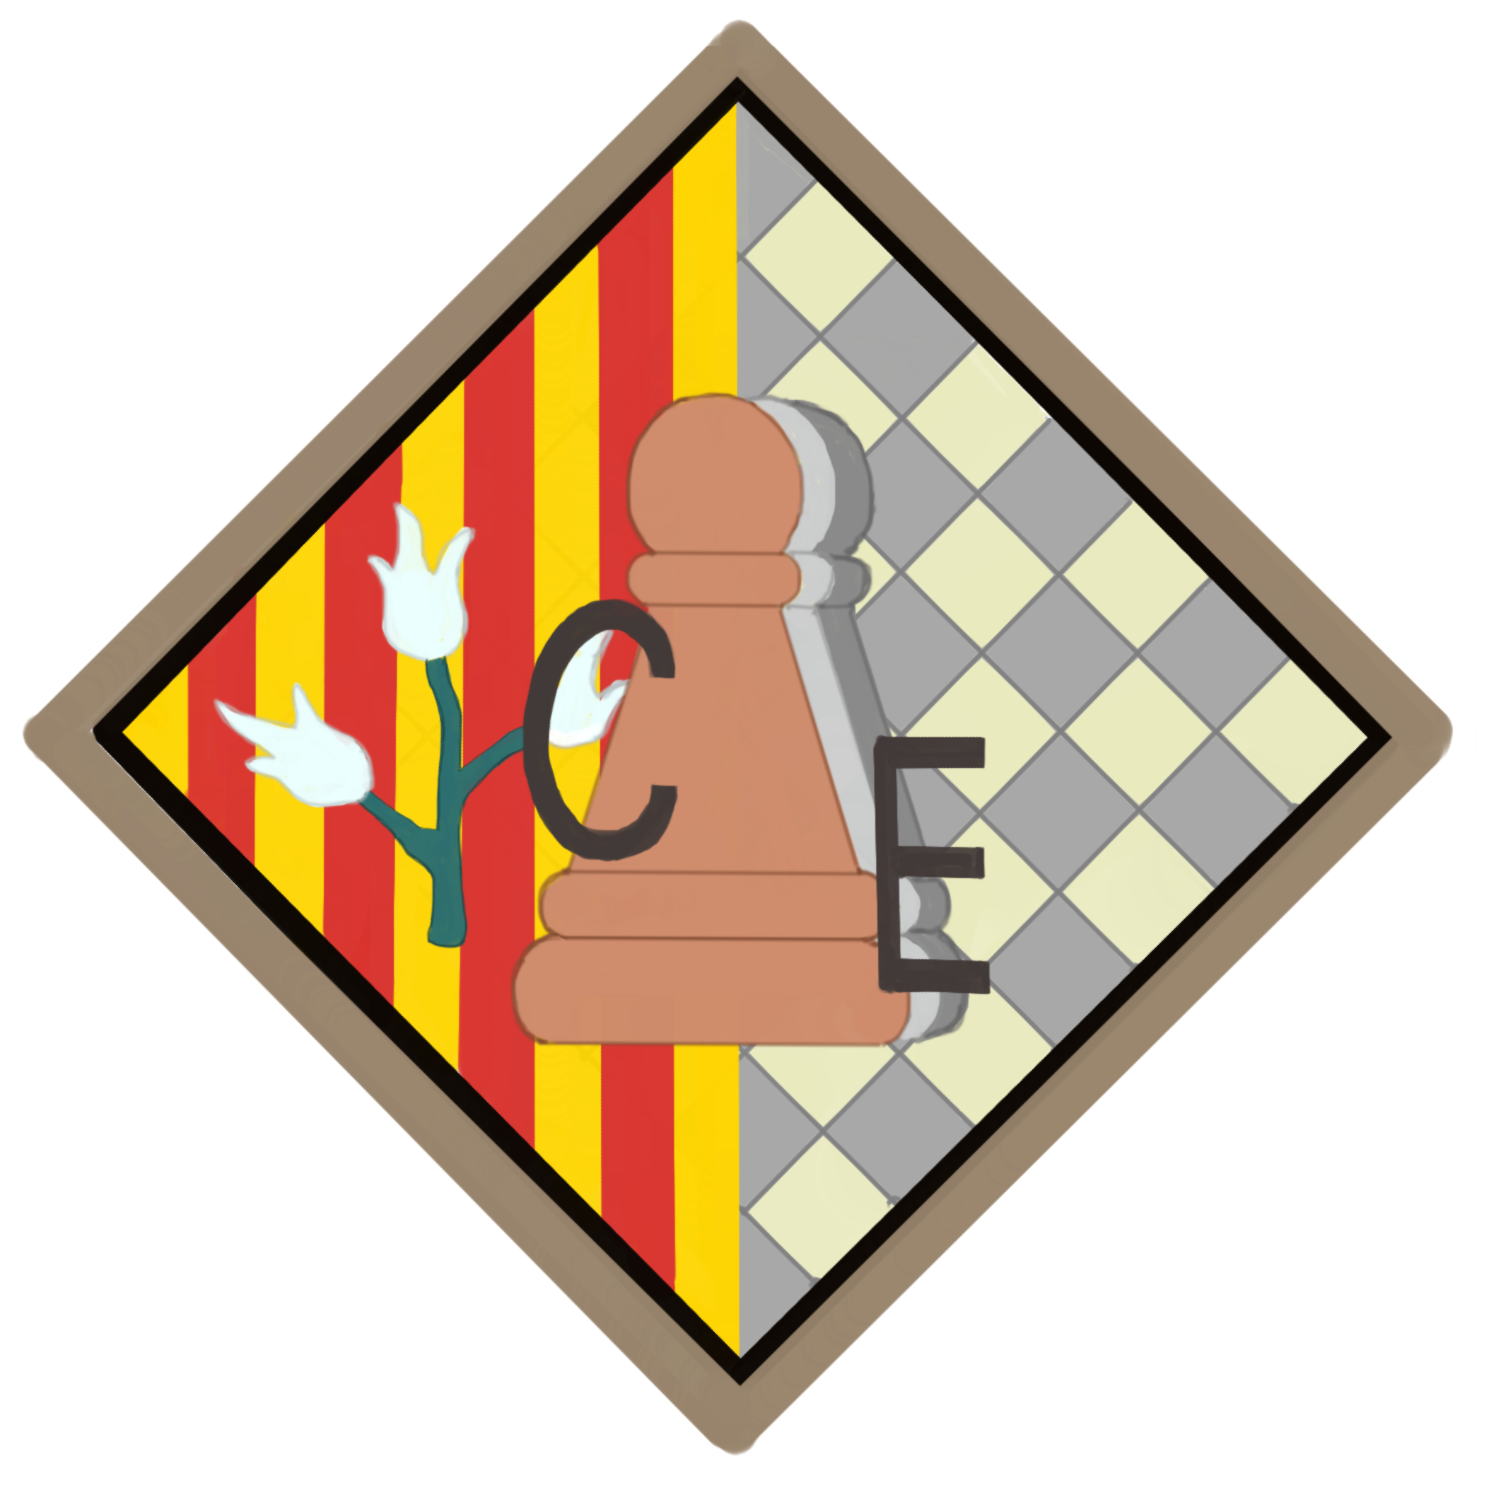 club-escacs-tres-peons